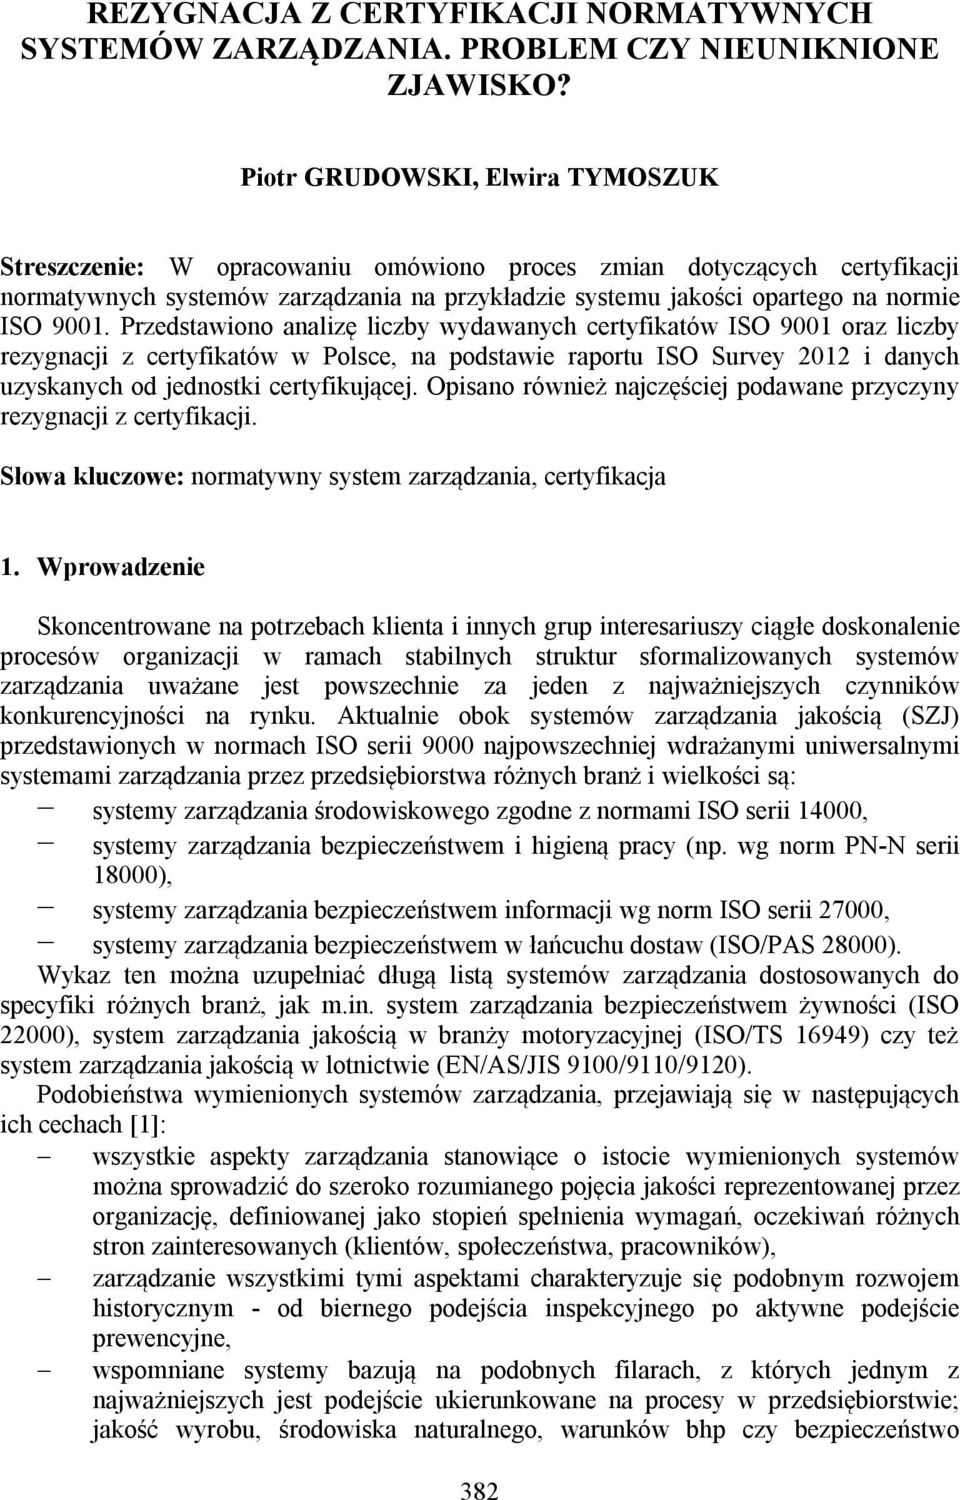 9001. Przedstawiono analizę liczby wydawanych certyfikatów ISO 9001 oraz liczby rezygnacji z certyfikatów w Polsce, na podstawie raportu ISO Survey 2012 i danych uzyskanych od jednostki